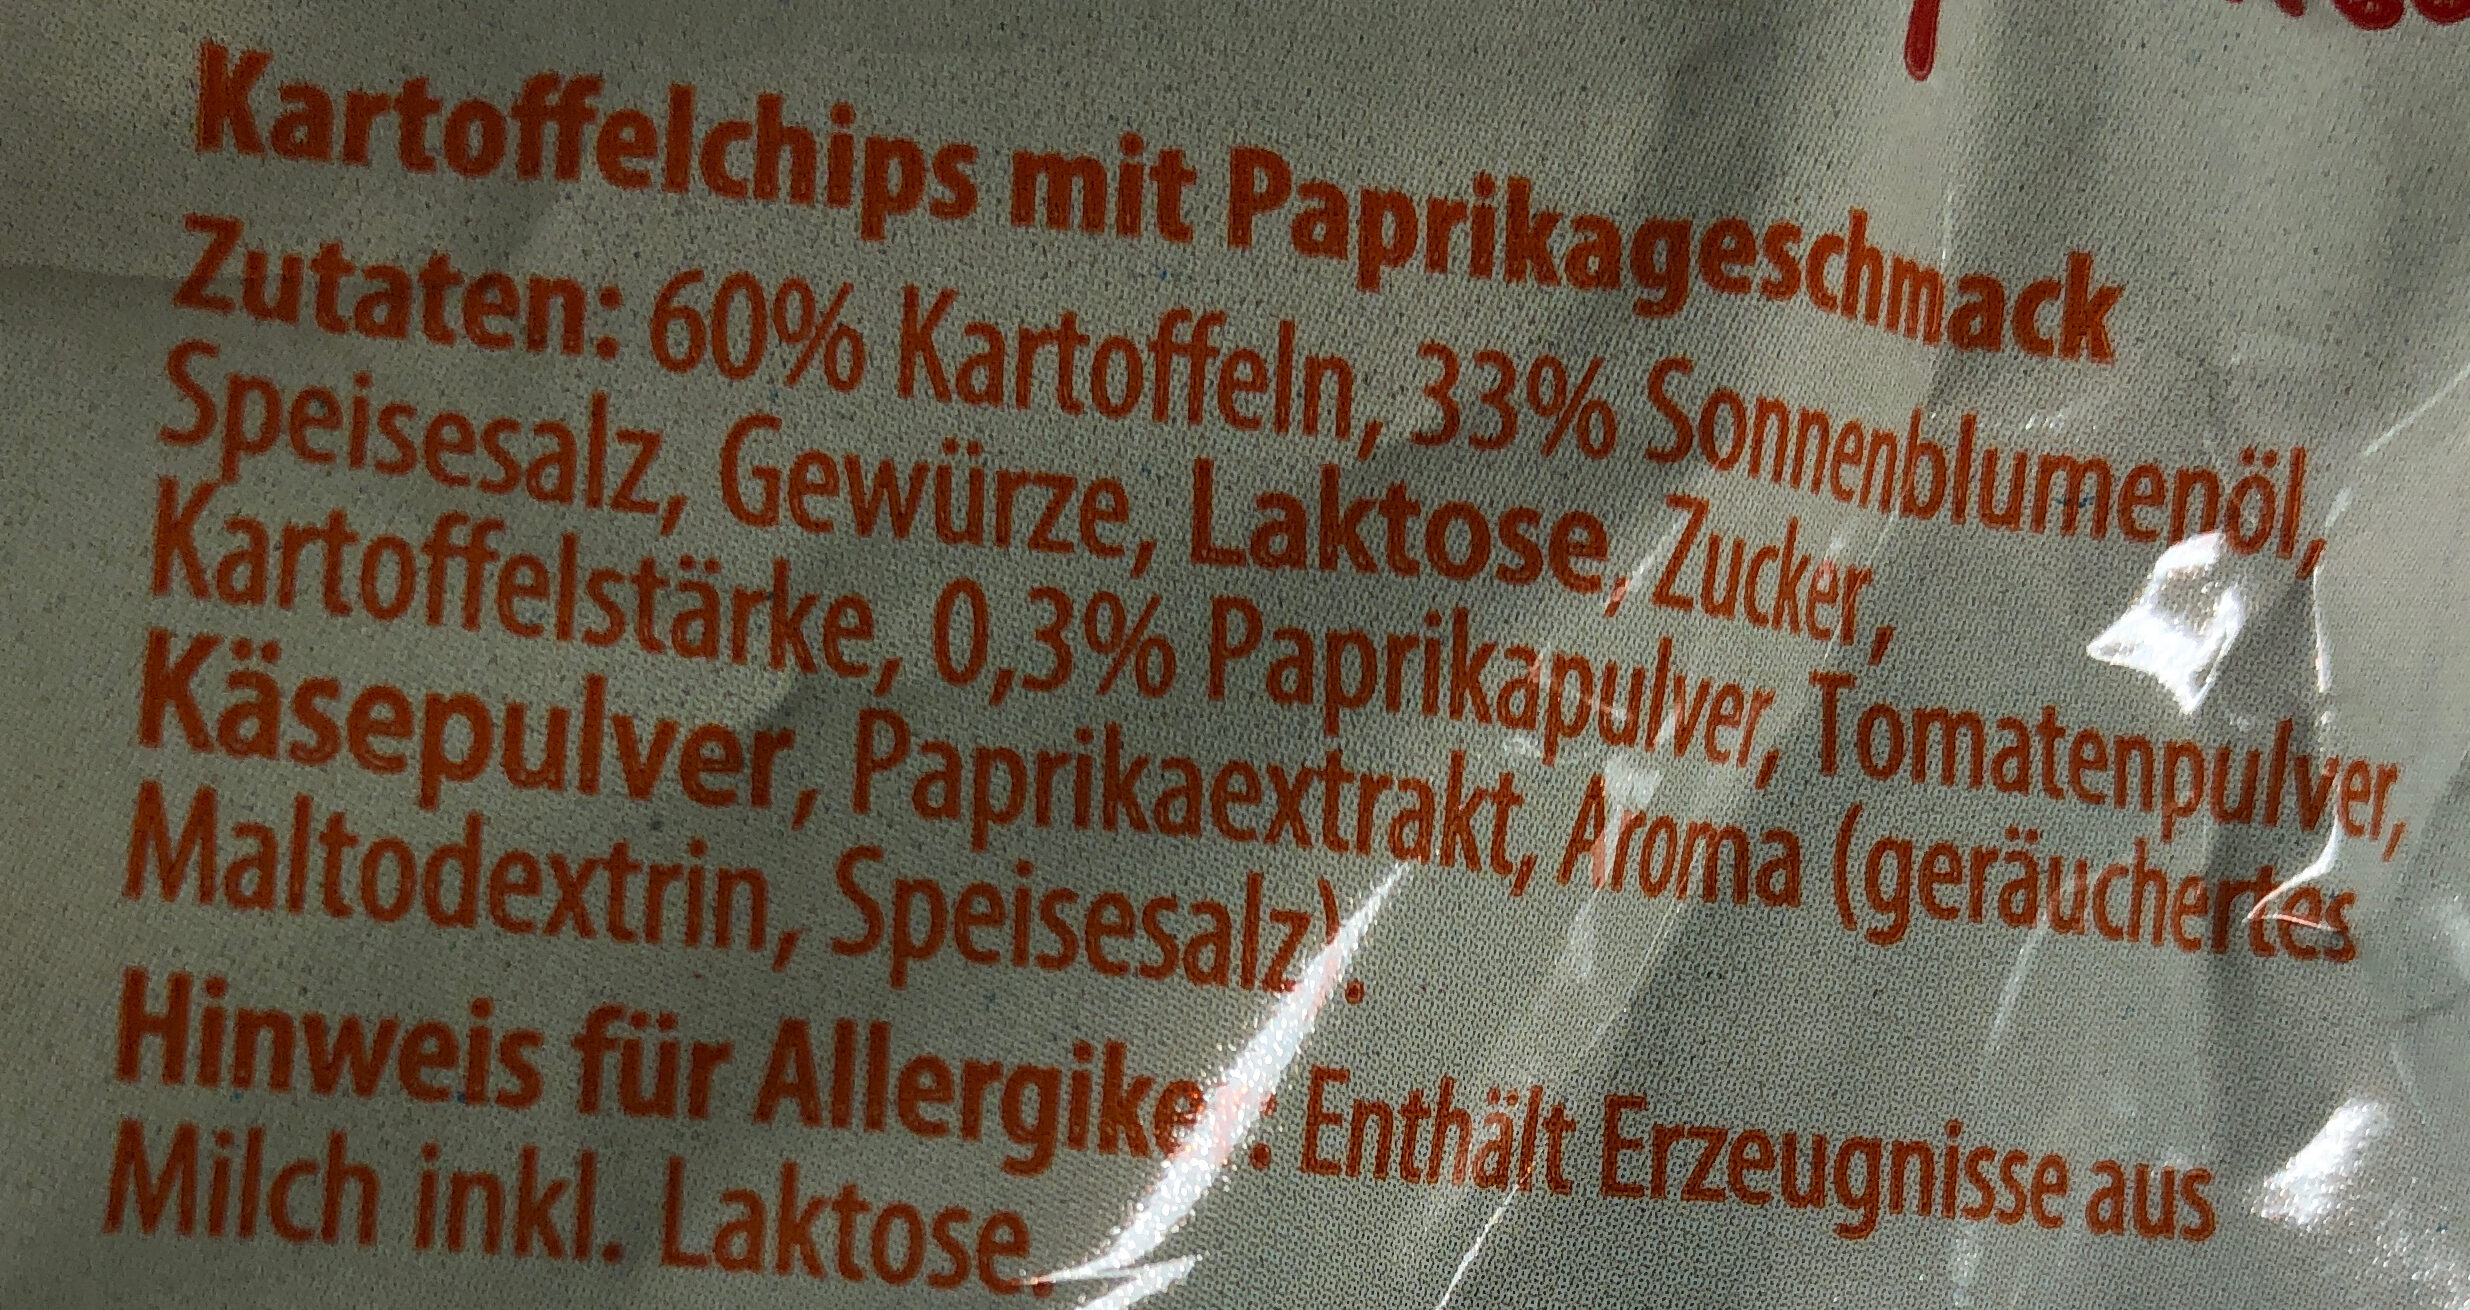 Kartoffelchips Paprika - Zutaten